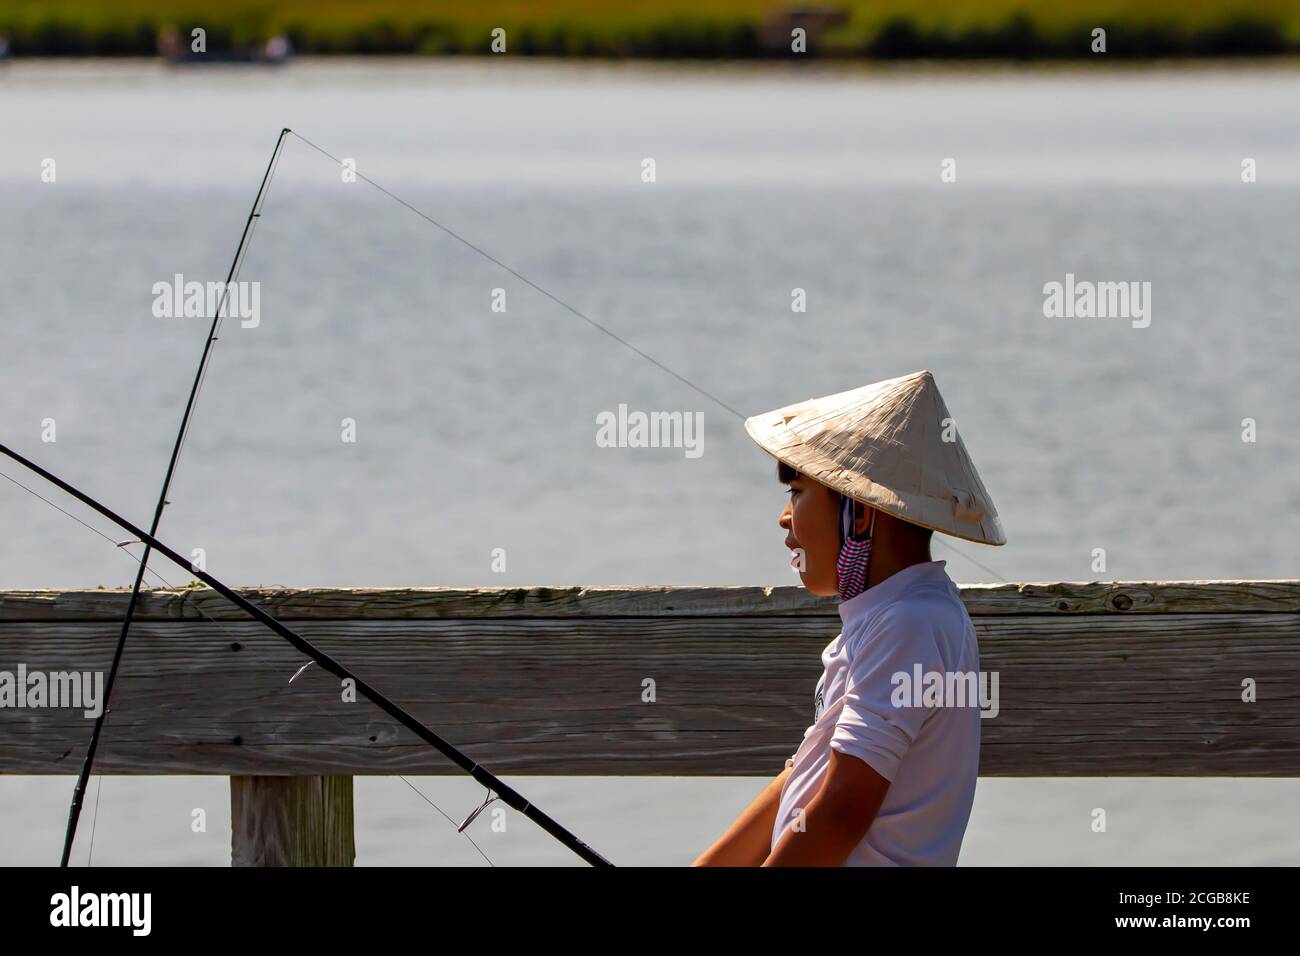 Eastern Neck Island, MD, USA 09/06/2020: Un garçon asiatique portant un chapeau de cône chinois traditionnel en bambou de paille tient une canne de pêche sur un pont Banque D'Images